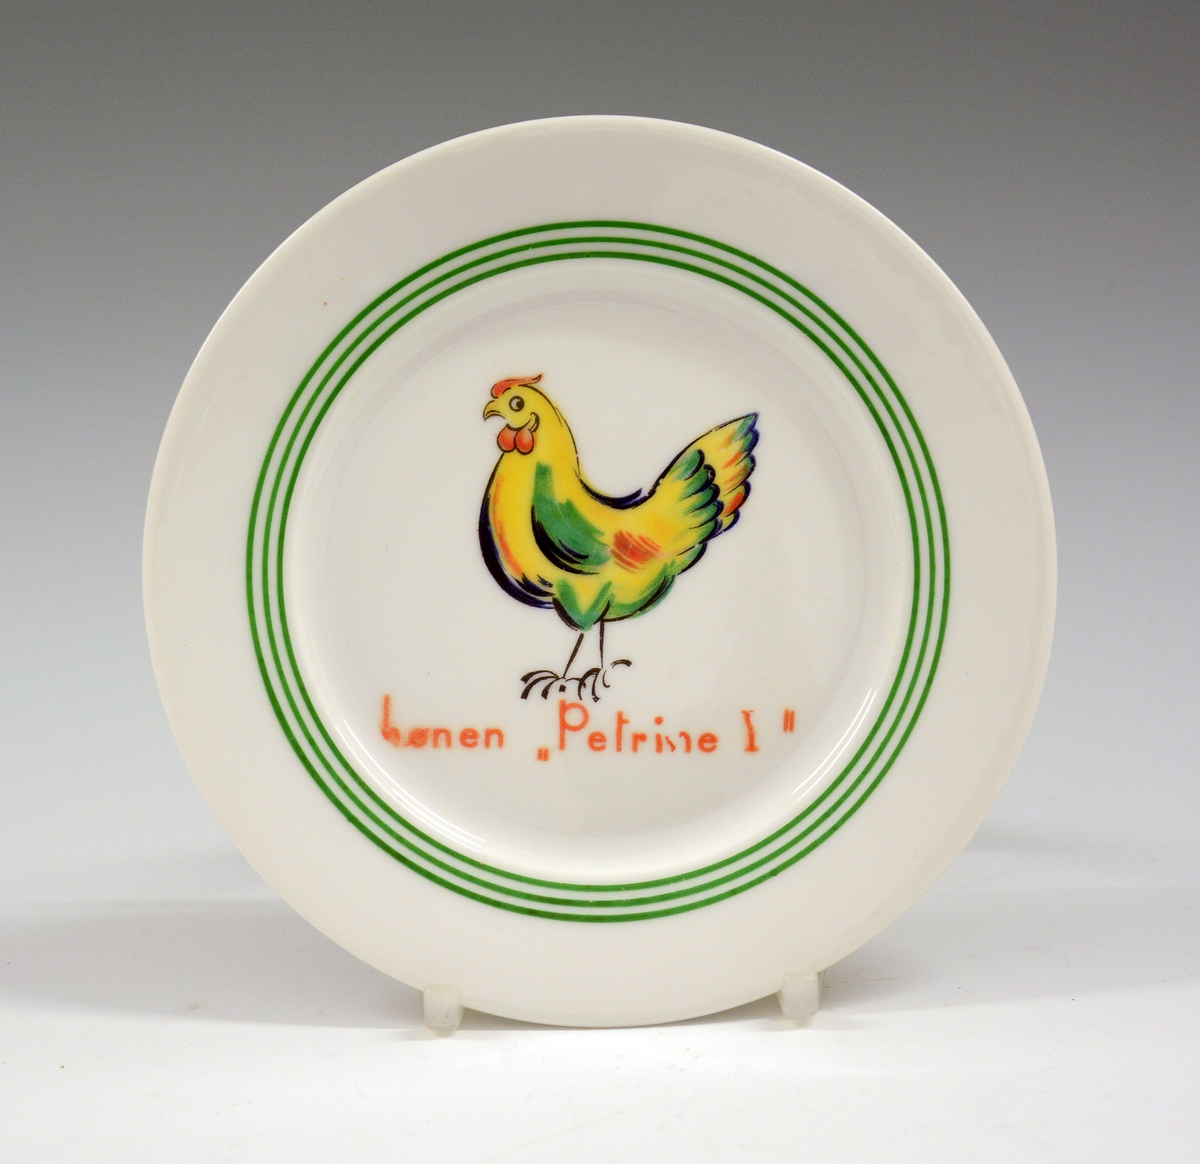 Asjett i porselen til dukkeservise. Hvit glasur. Dekorert med høne og tekst hønen Petrine I. Trykkdekor, grønn strek.
Modell: 1460.
Dekor: "Hønen Petrine 1".